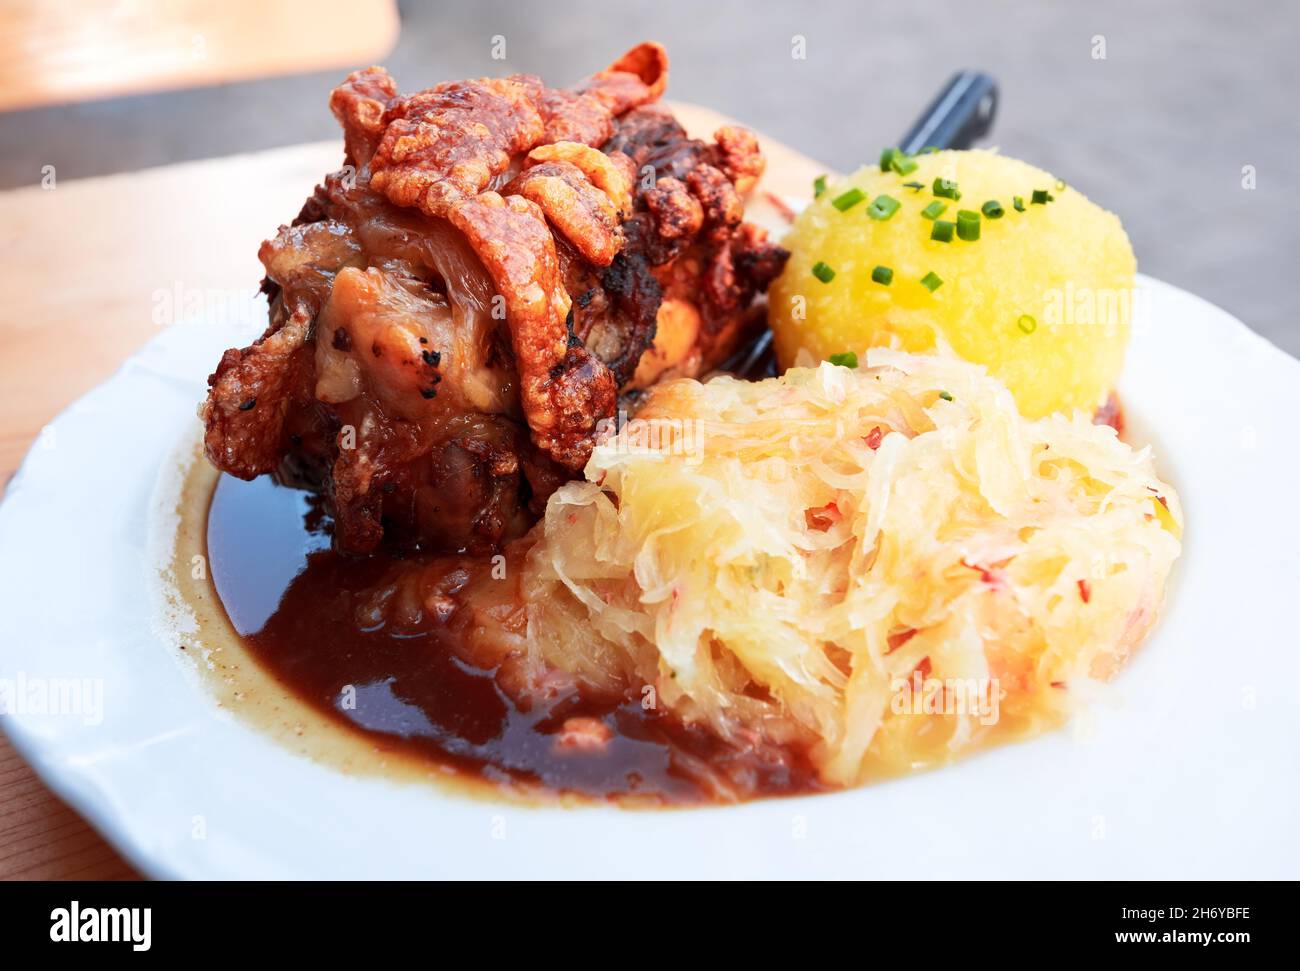 Schweinshaxe, cuisine bavaroise traditionnelle avec jarret de jambon rôti (jarret de porc) et boulettes de chou et de pomme de terre. Banque D'Images